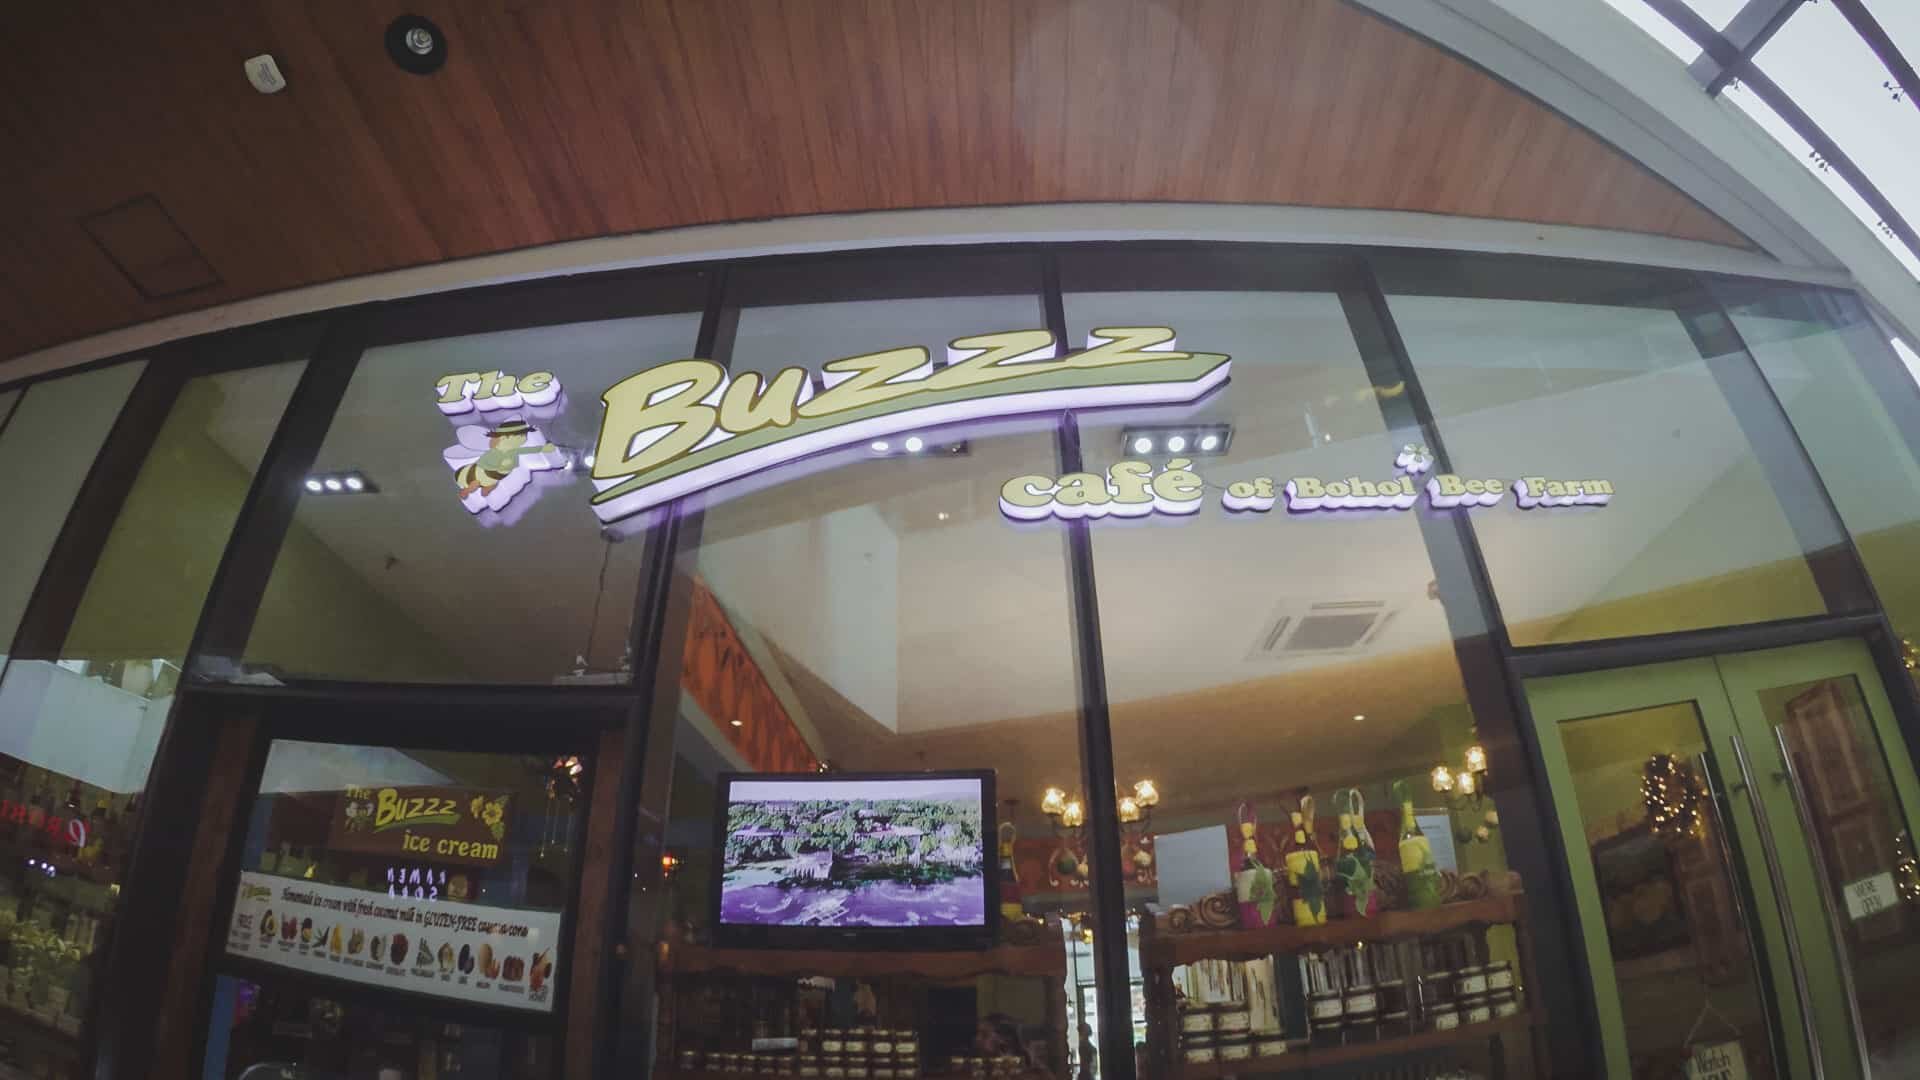 The Buzzz Cafe in Cebu